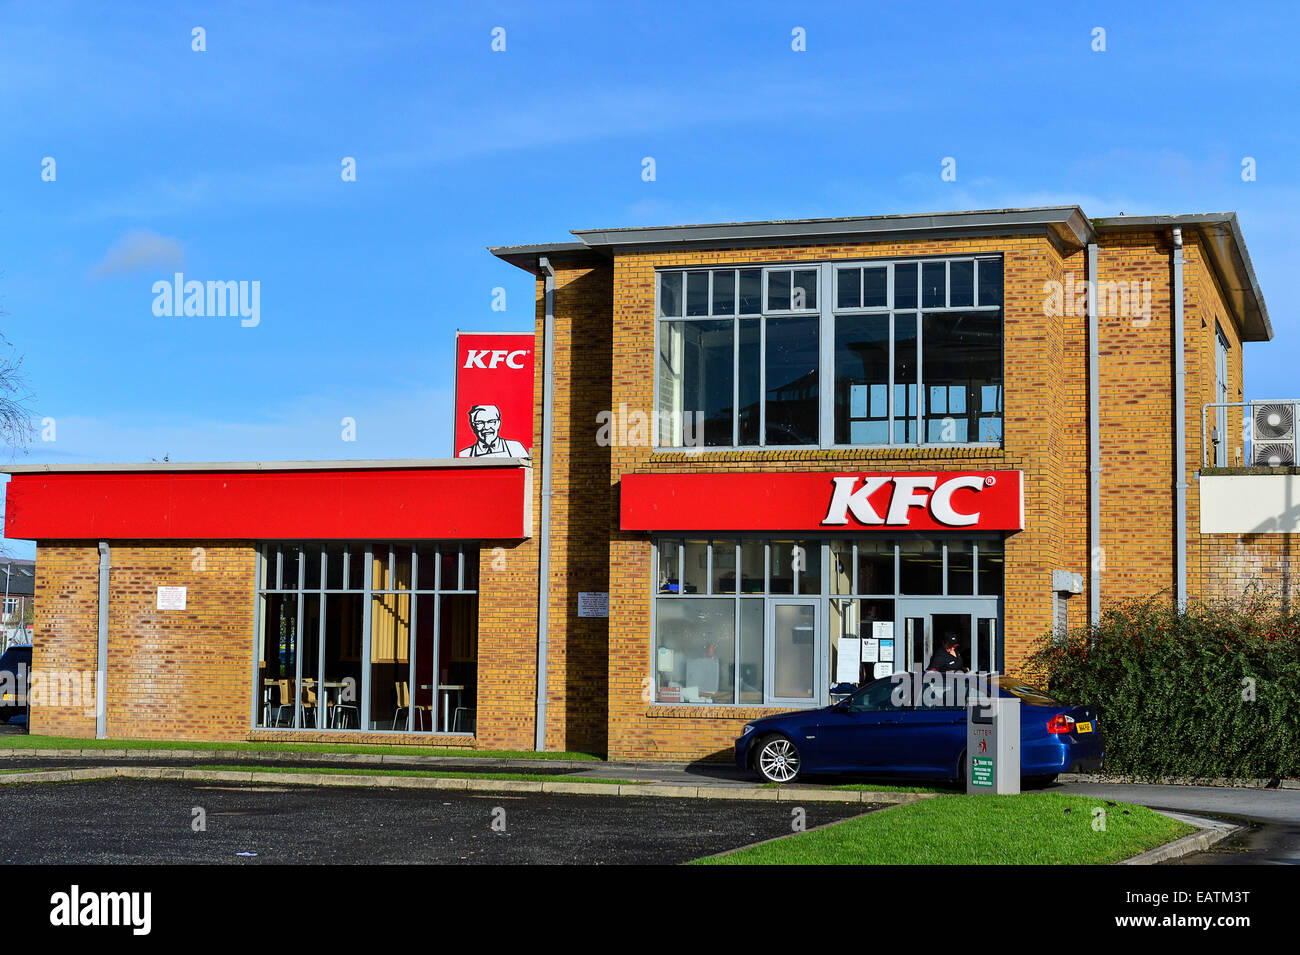 Stock Photo - KFC Kentucky Fried Chicken Drive Thru panneau rouge avec le Colonel Sanders sur route avec ciel bleu. Banque D'Images